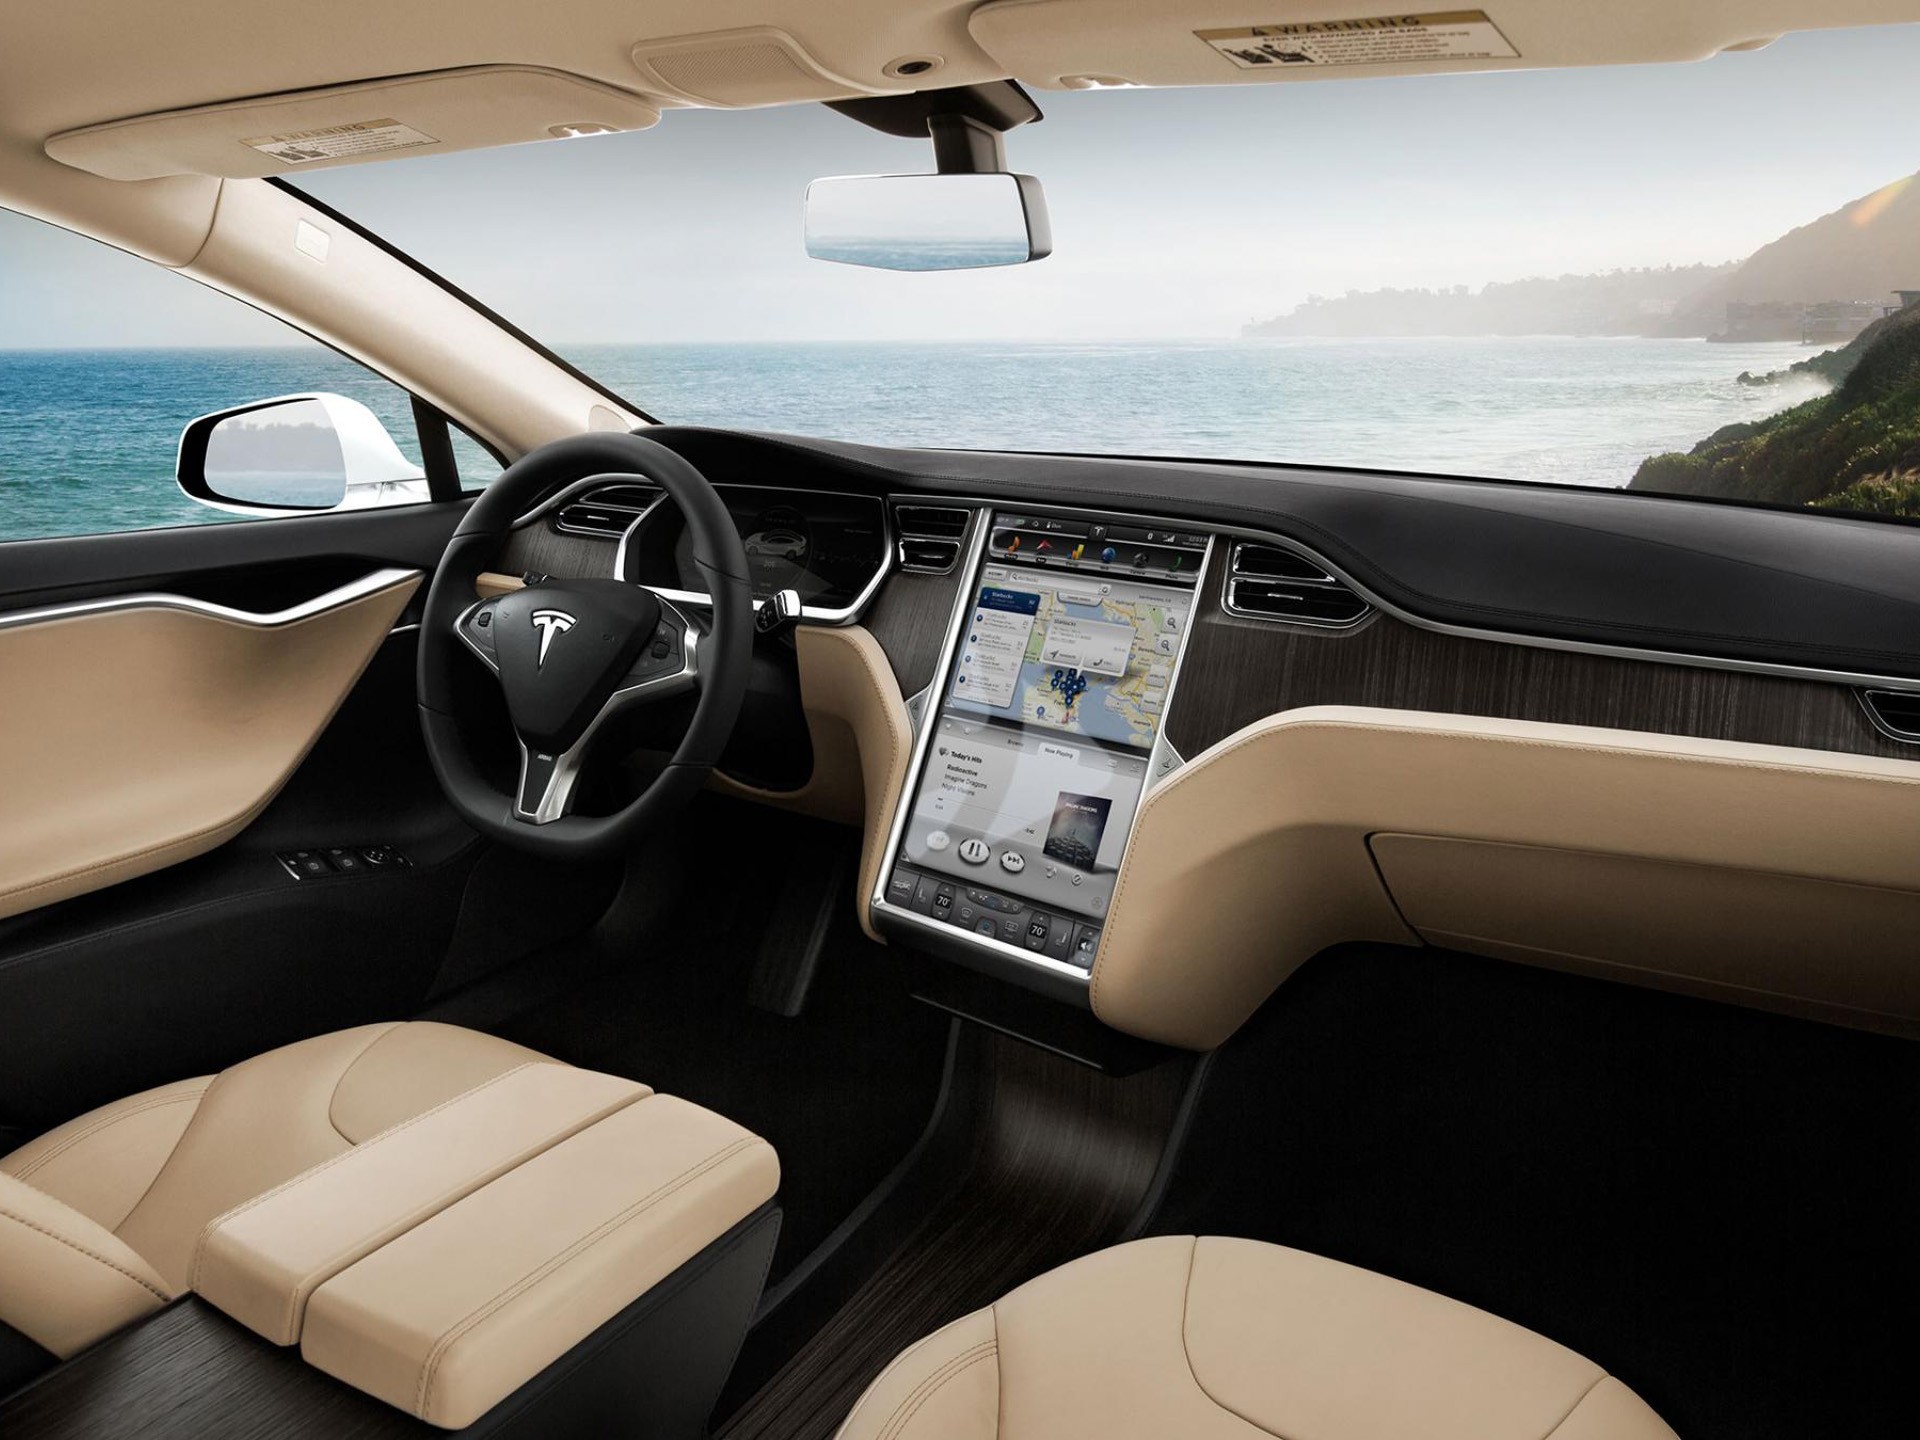 Tesla Motors busca que sus vehículos lleguen a ser autónomos, eventualmente.